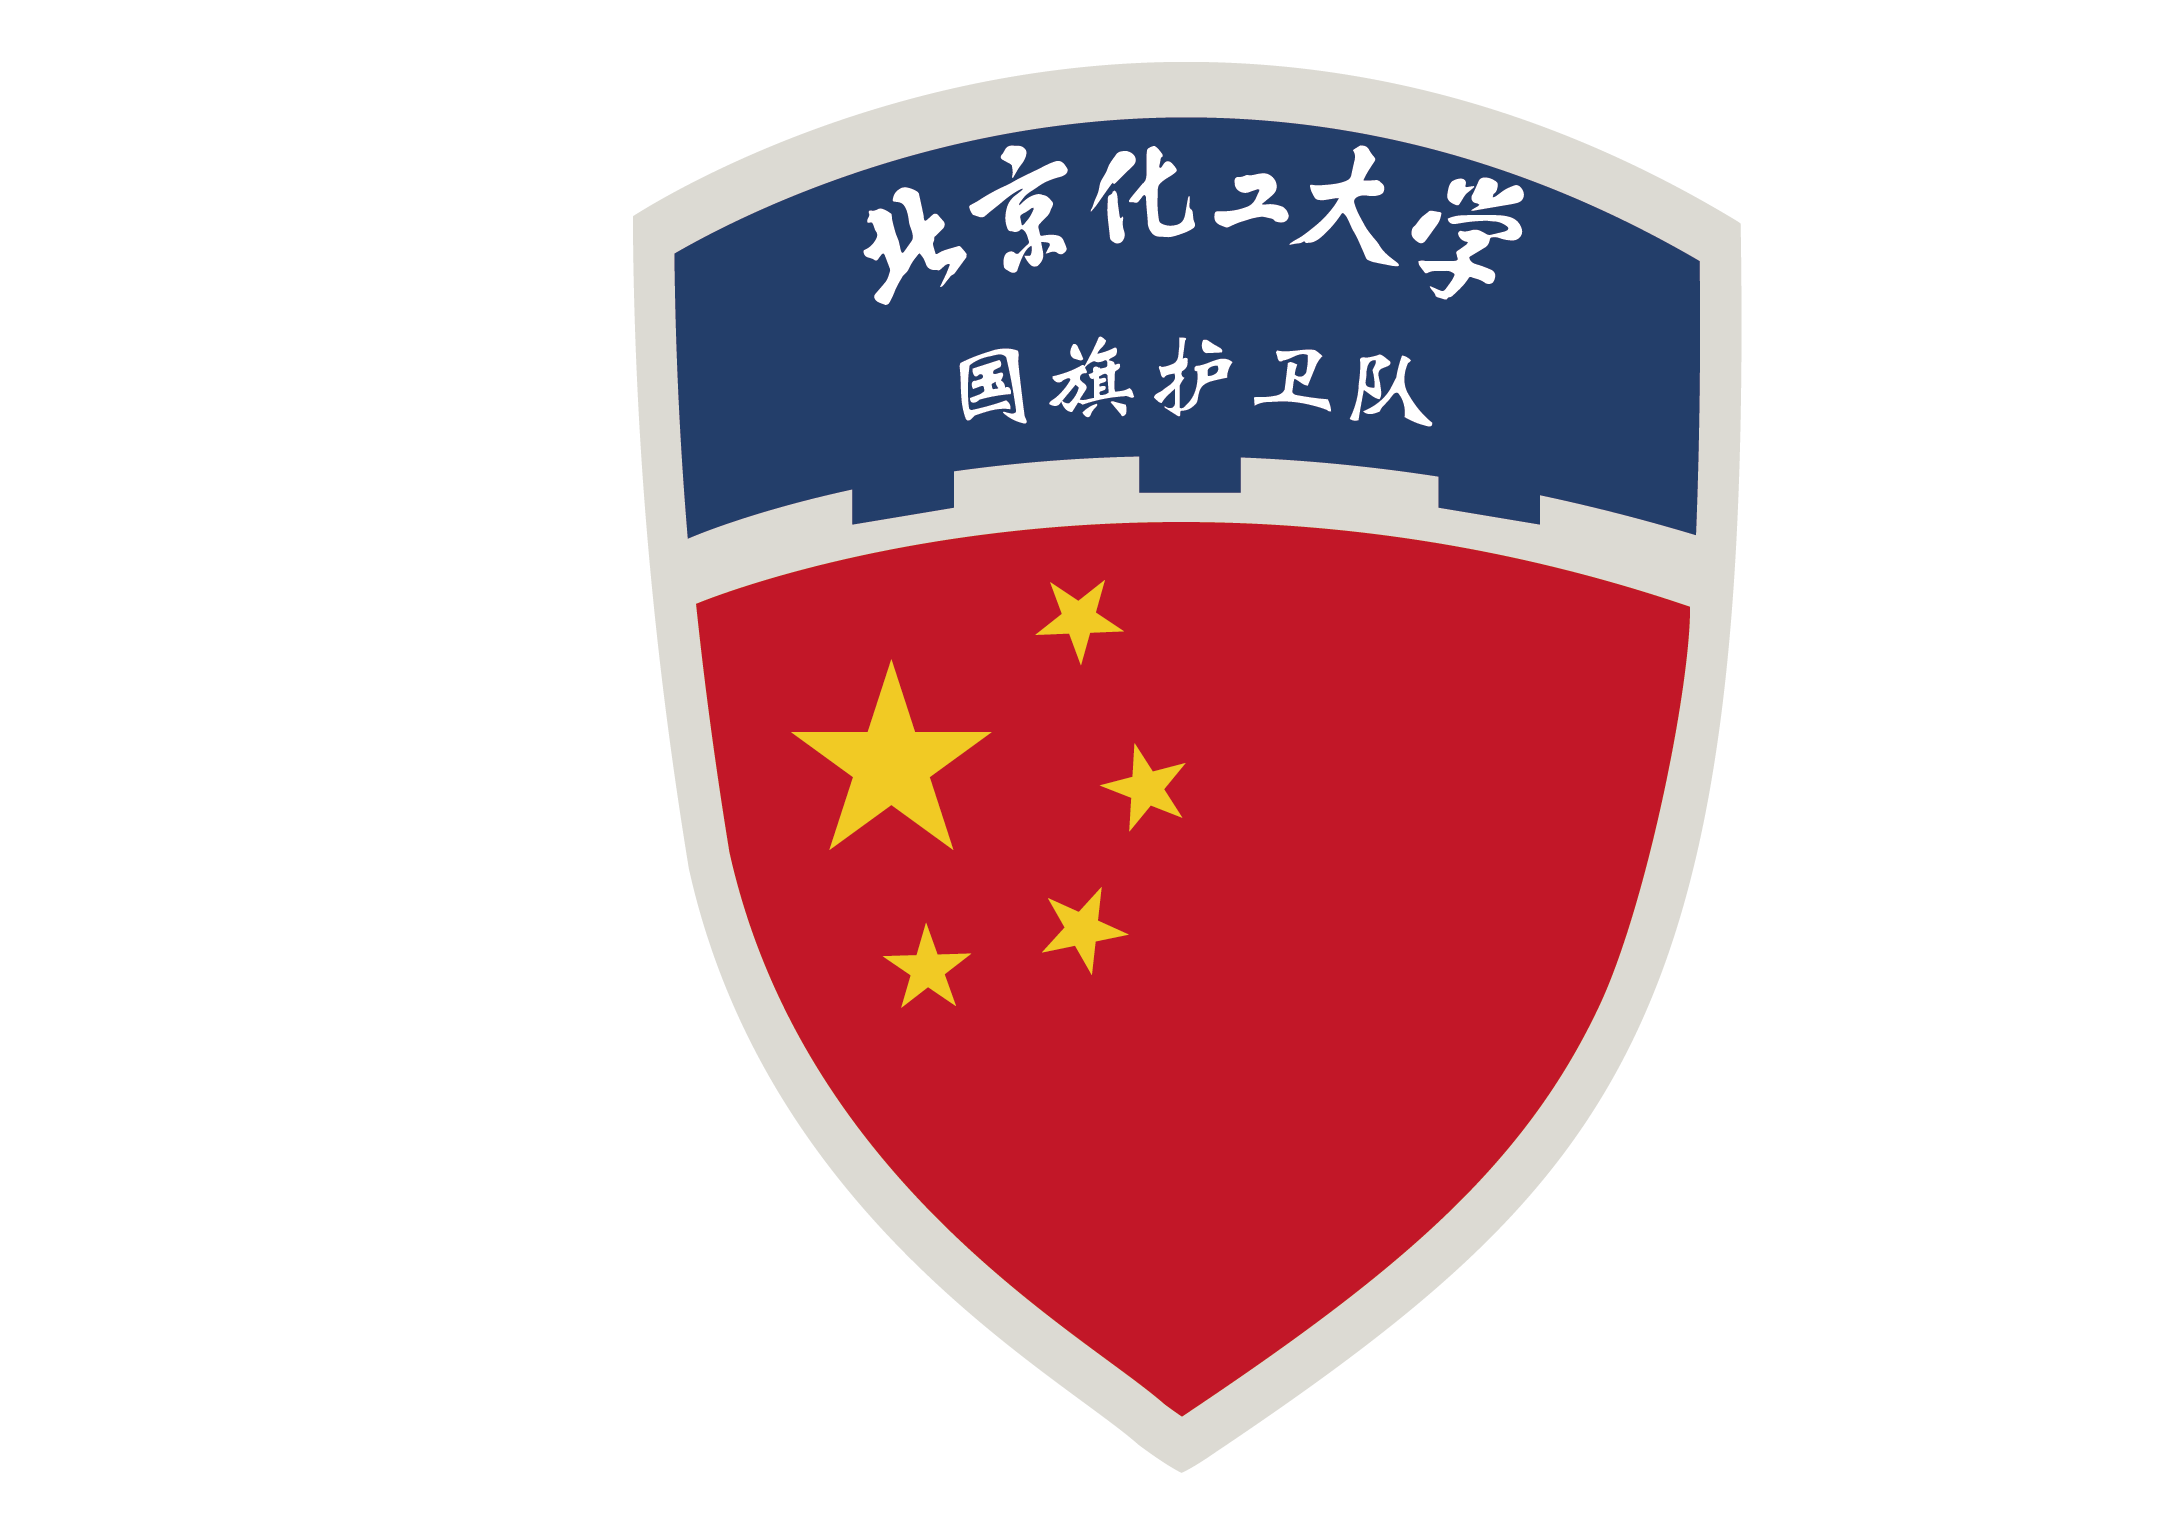 北京化工大學國旗護衛隊